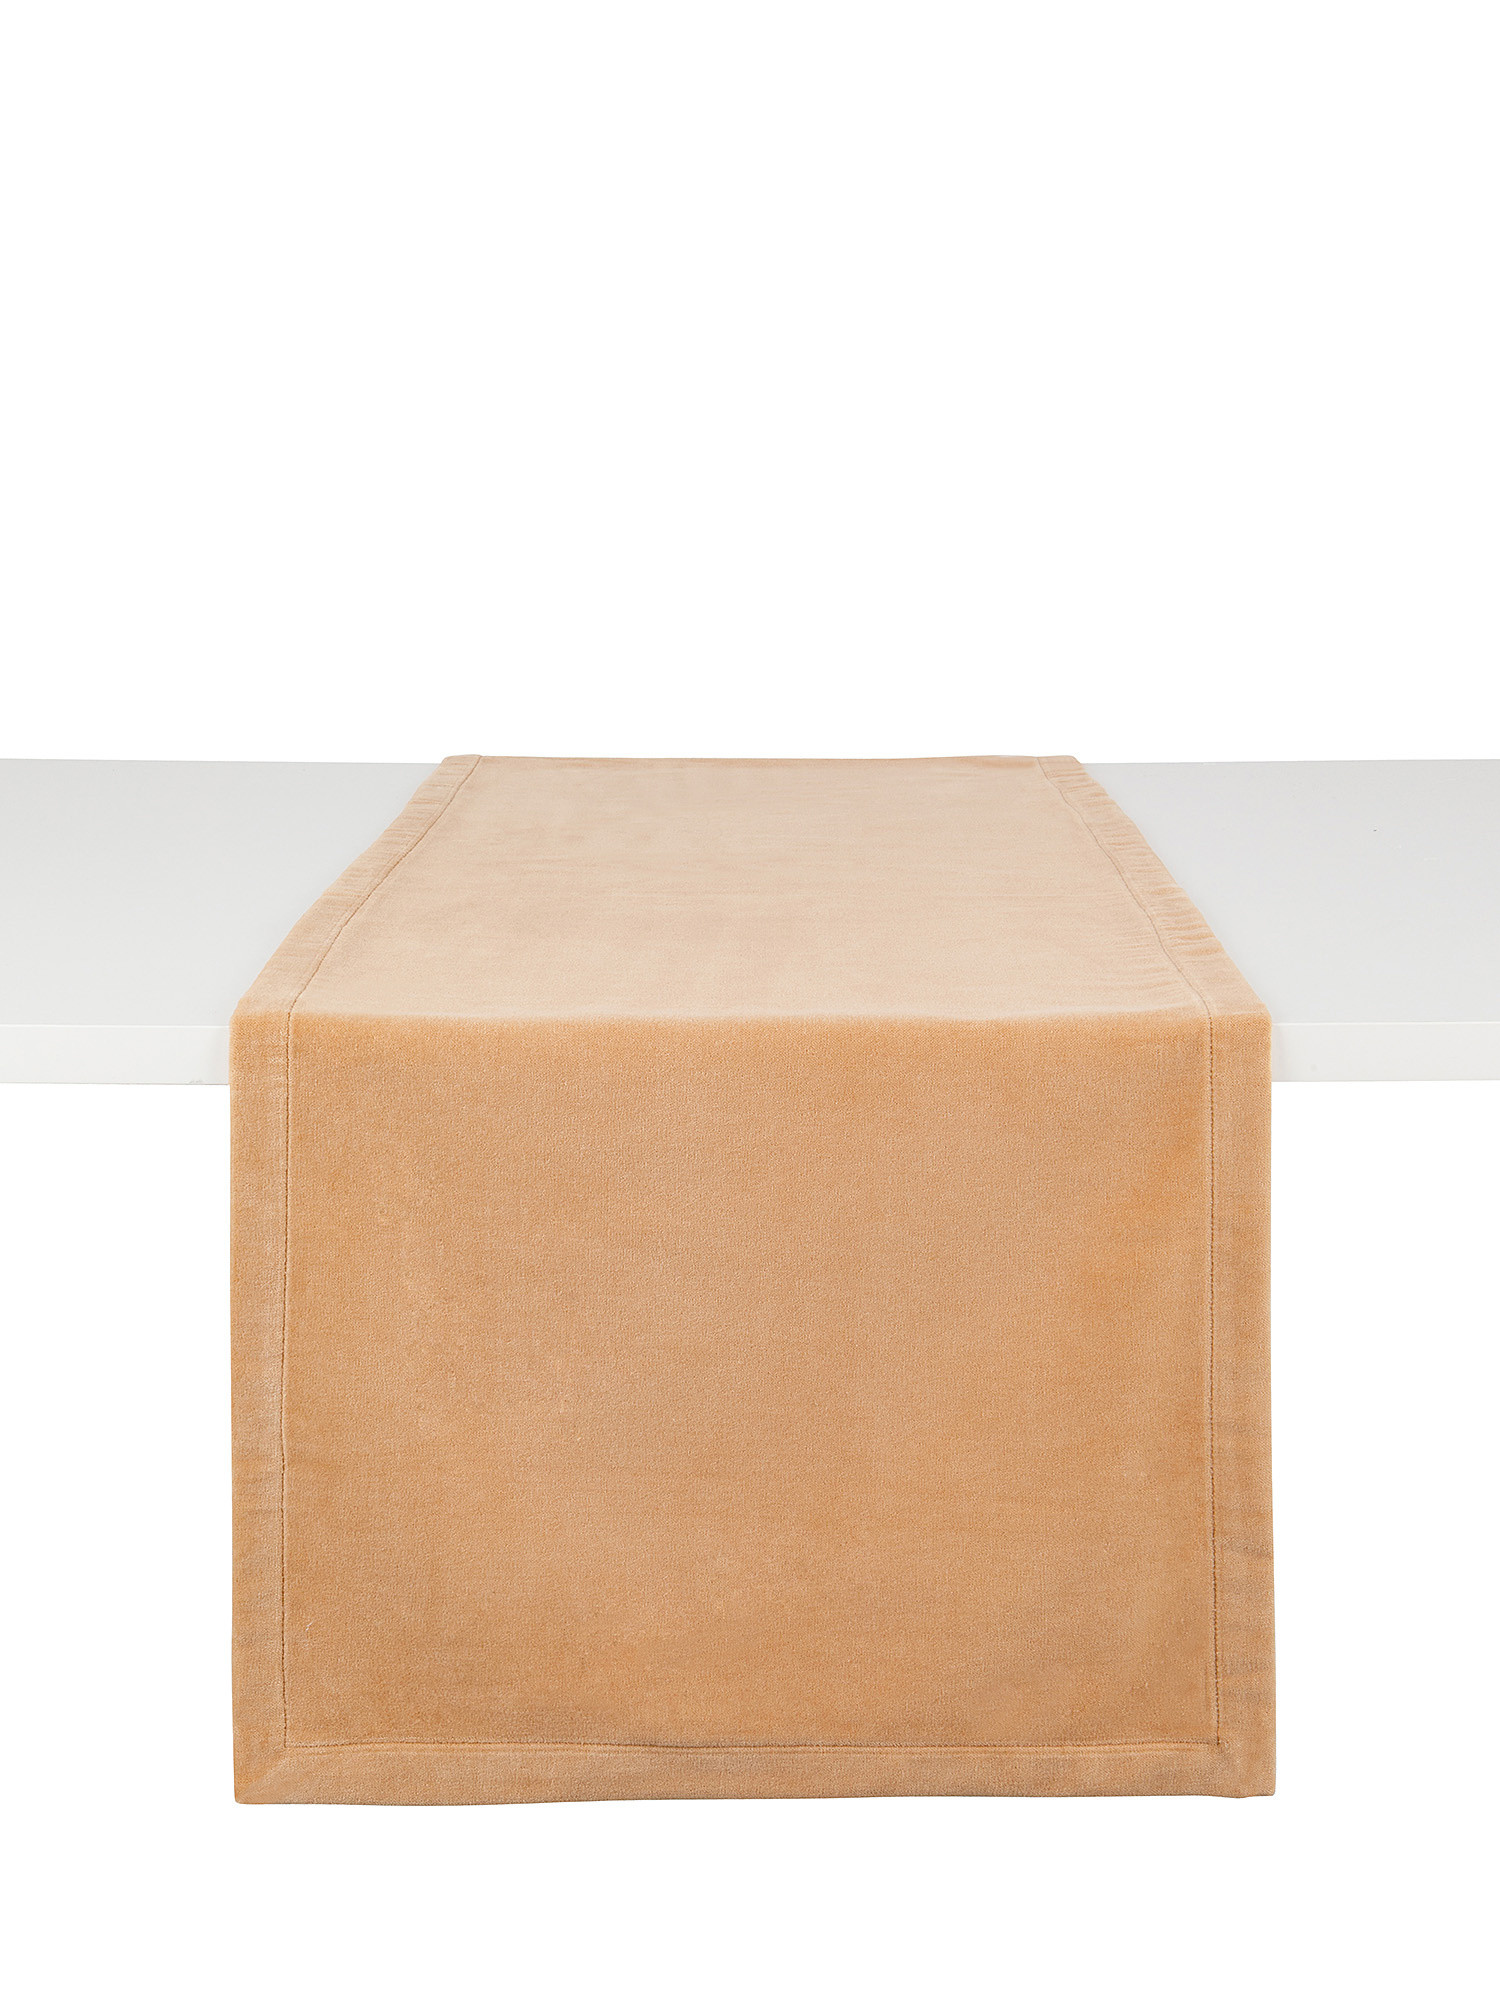 Solid color cotton velvet table runner, Beige, large image number 0